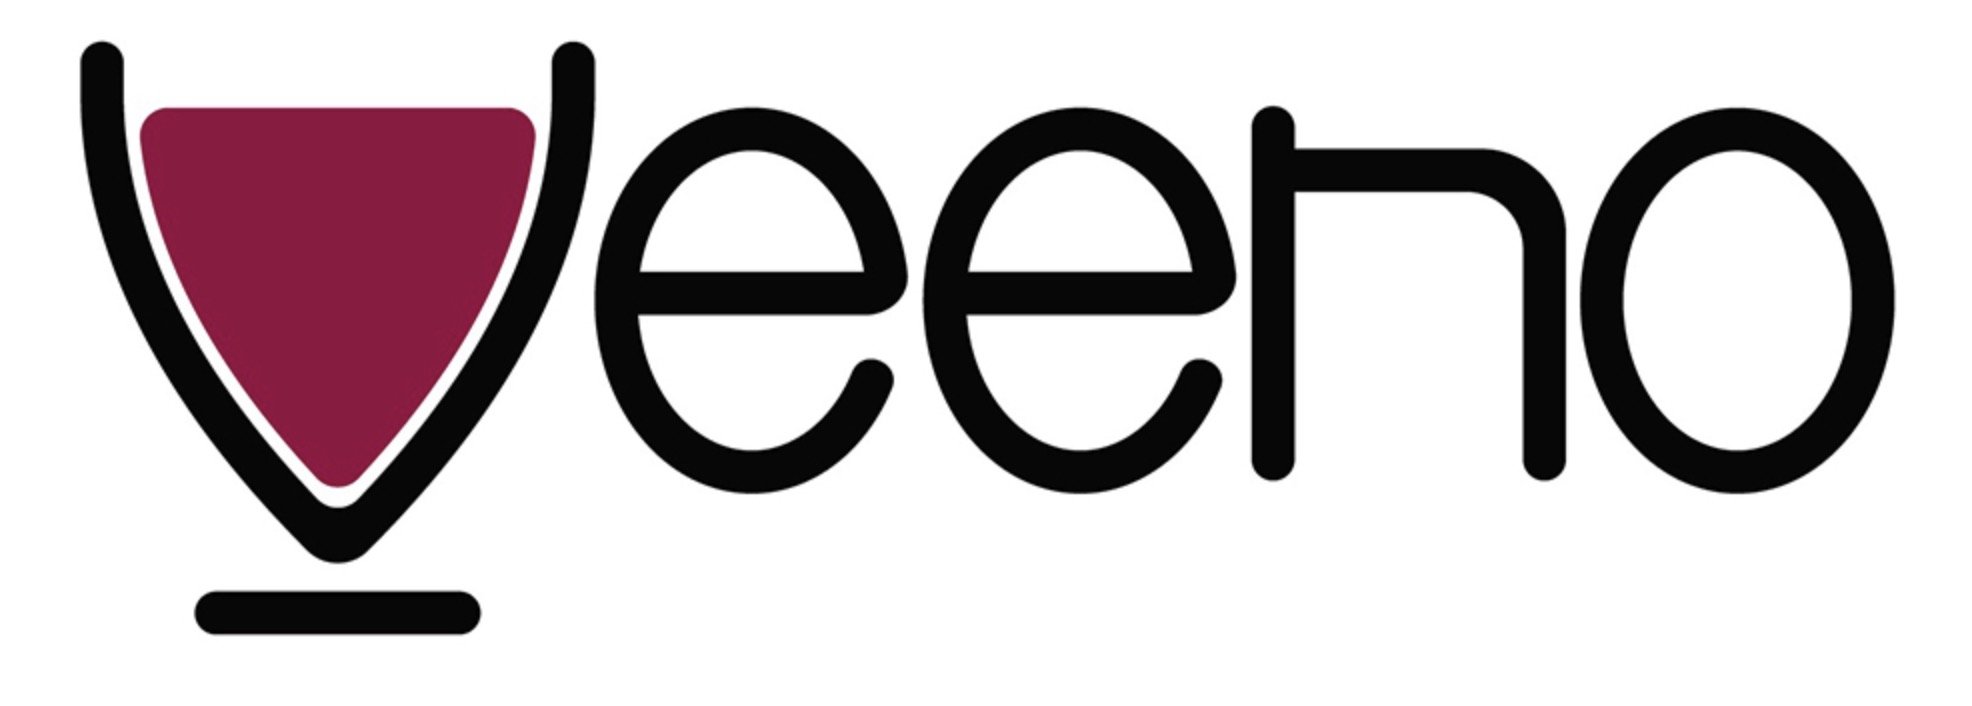 Logo Veeno.jpg